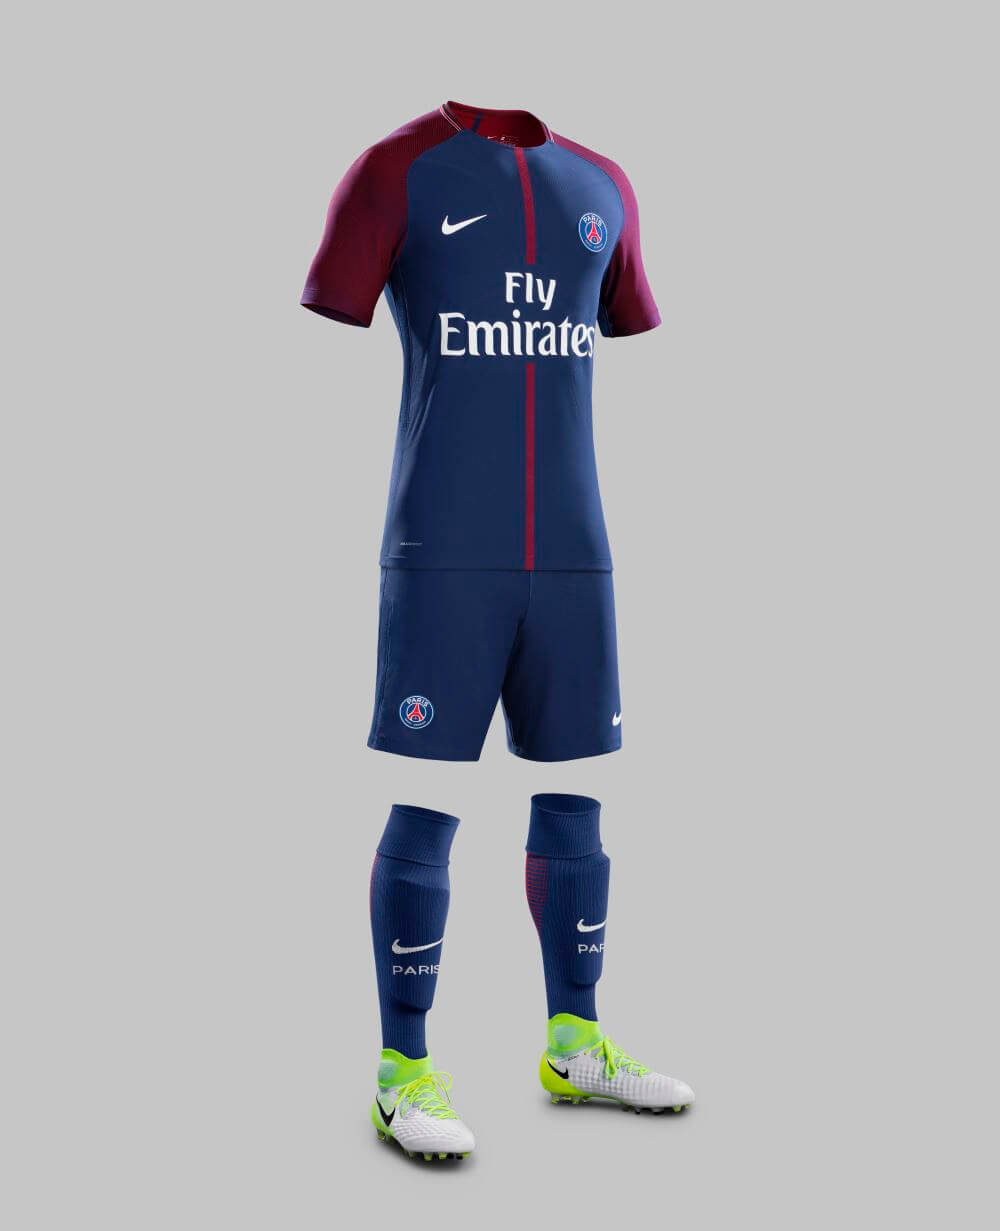 Fabel Emulatie Vacature Dit is het nieuwe Paris Saint Germain Thuisshirt voor 2017-2018